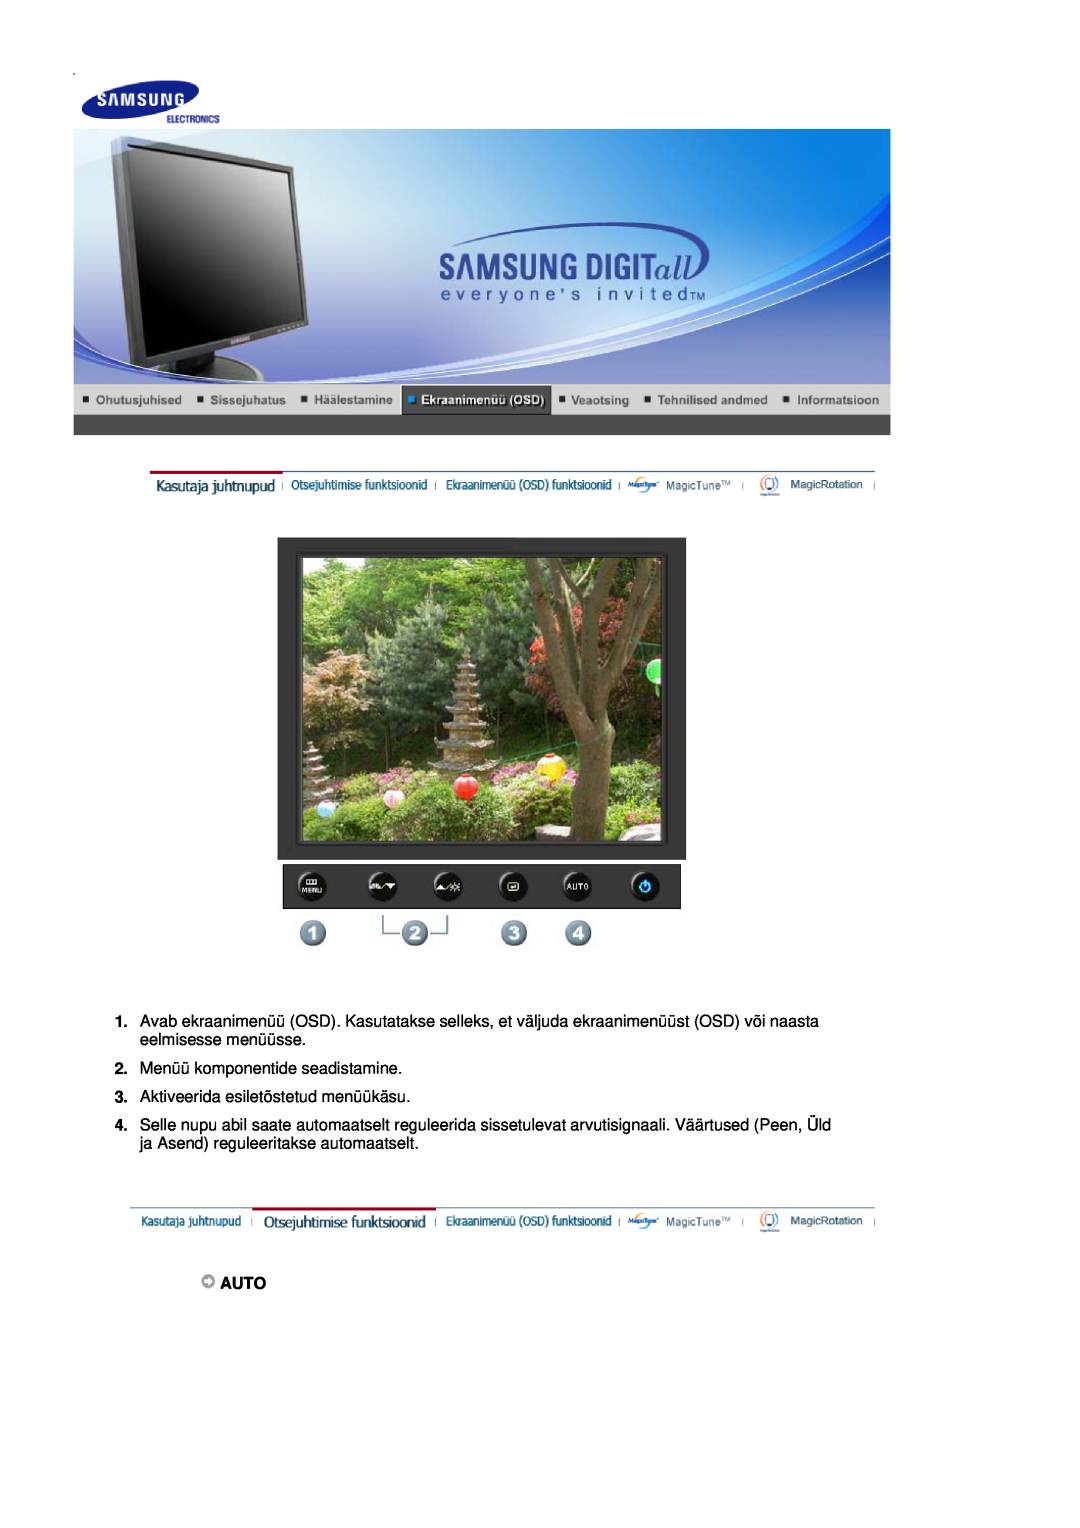 Samsung LS17HADKSH/EDC, LS19HADKSP/EDC manual Menüü komponentide seadistamine, Aktiveerida esiletõstetud menüükäsu, Auto 